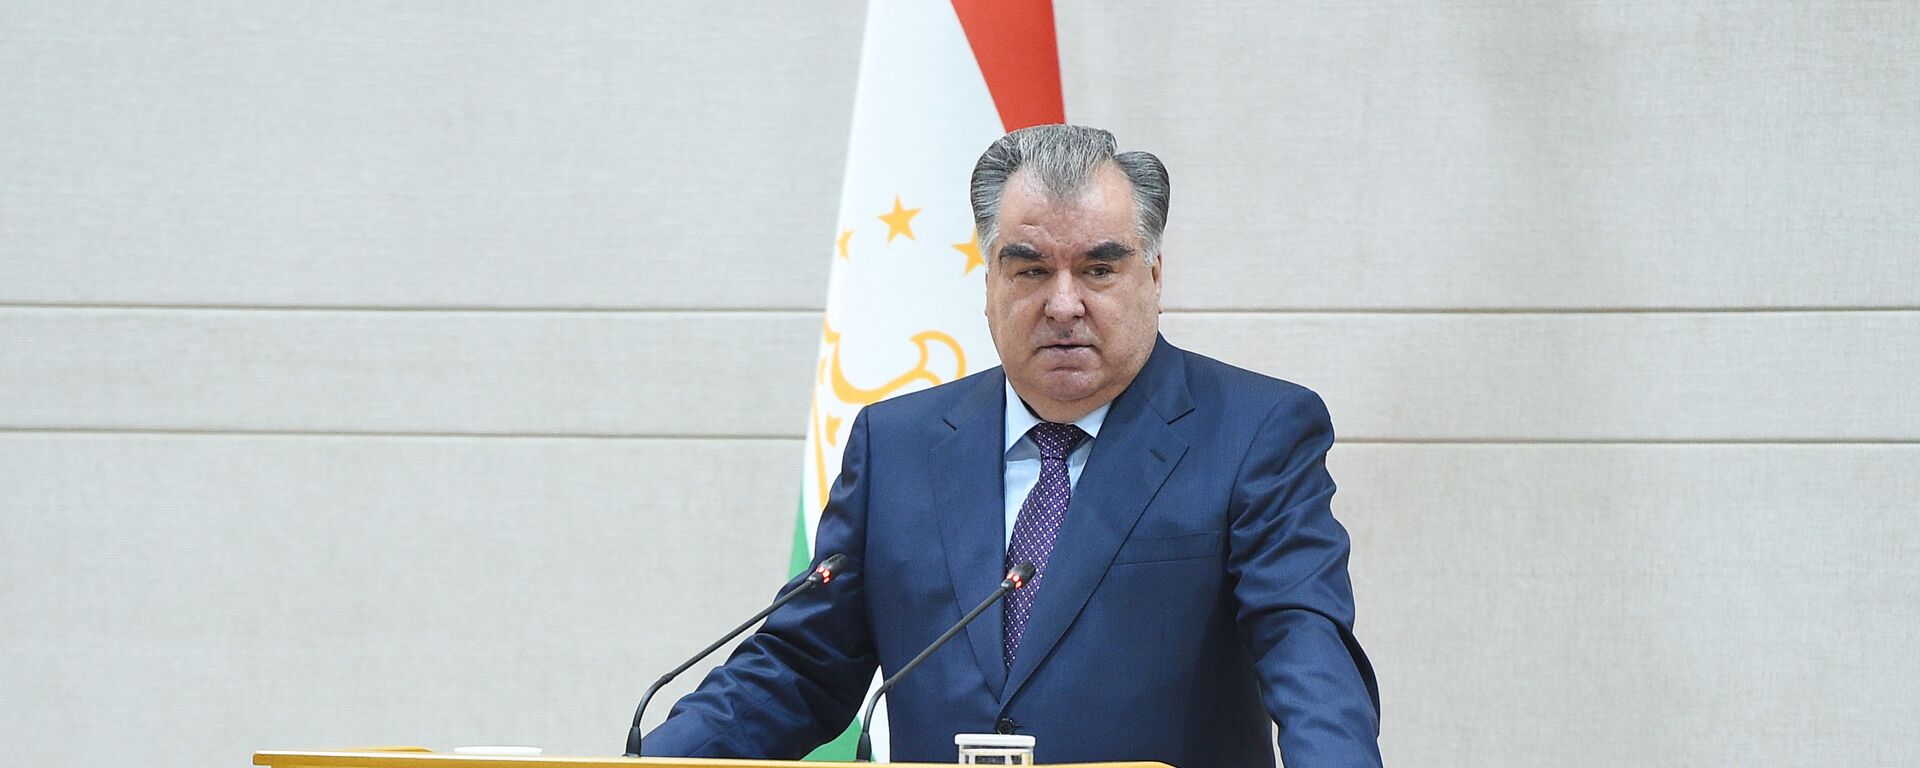 Президент Таджикистана Эмомали Рахмон - Sputnik Таджикистан, 1920, 21.07.2021